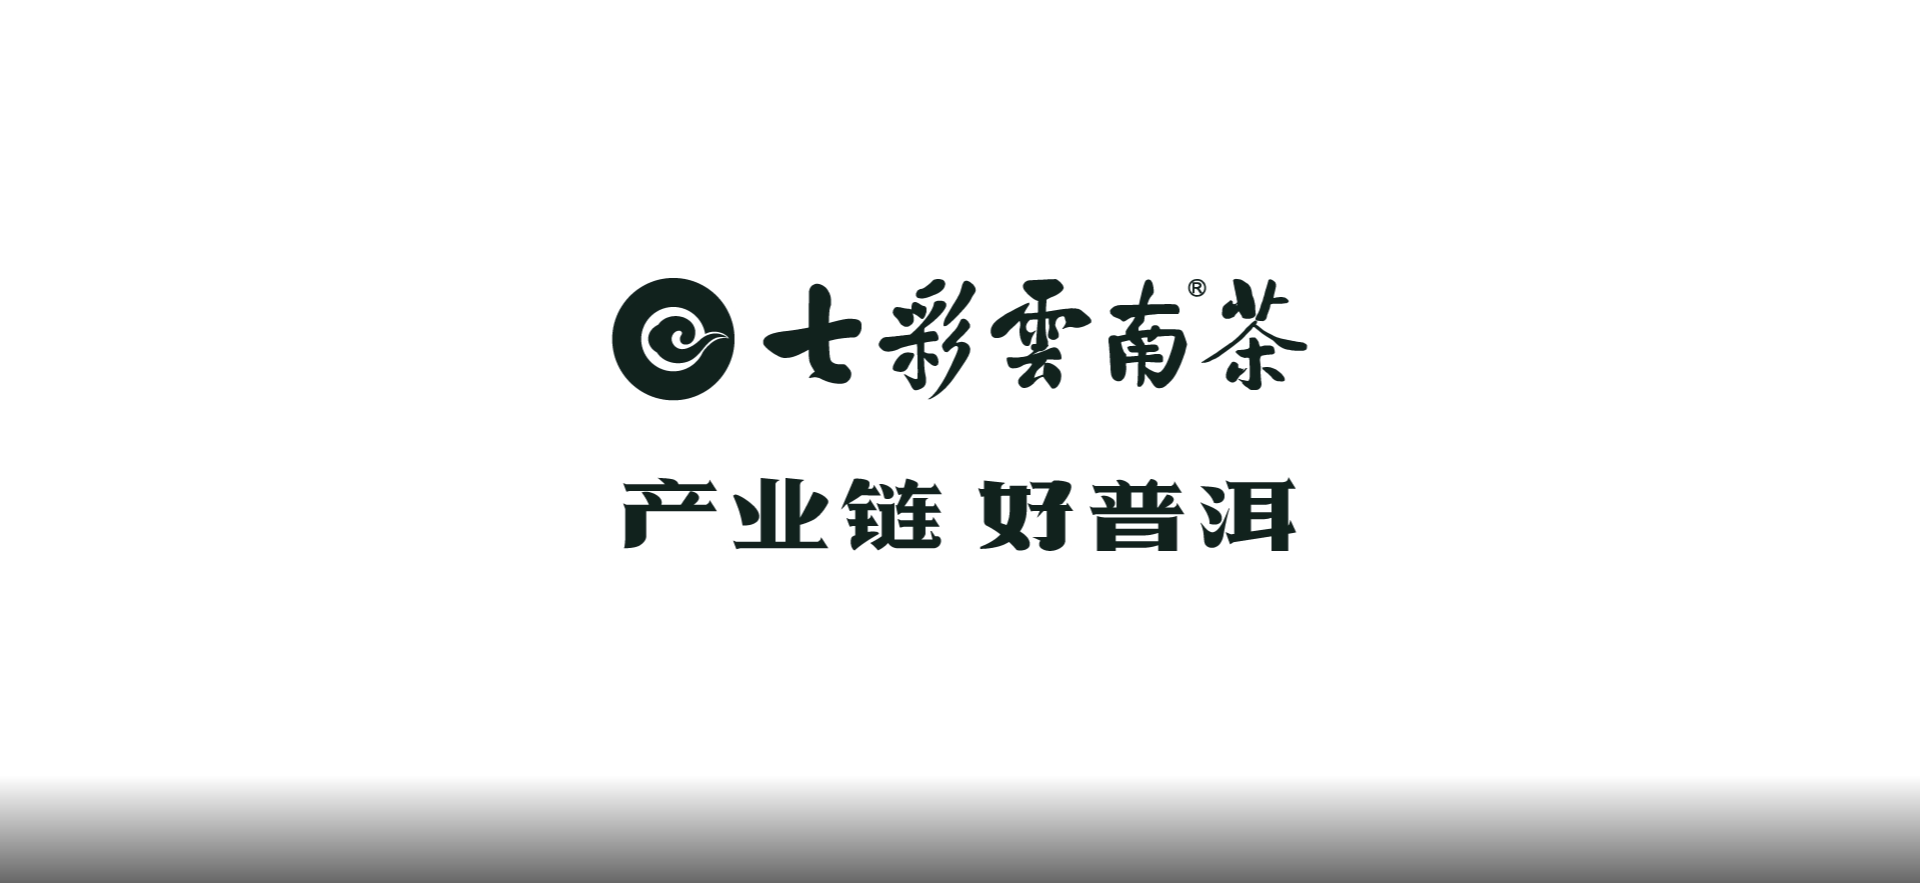 七彩云南®茶——品牌长画卷背后的创作故事（三）